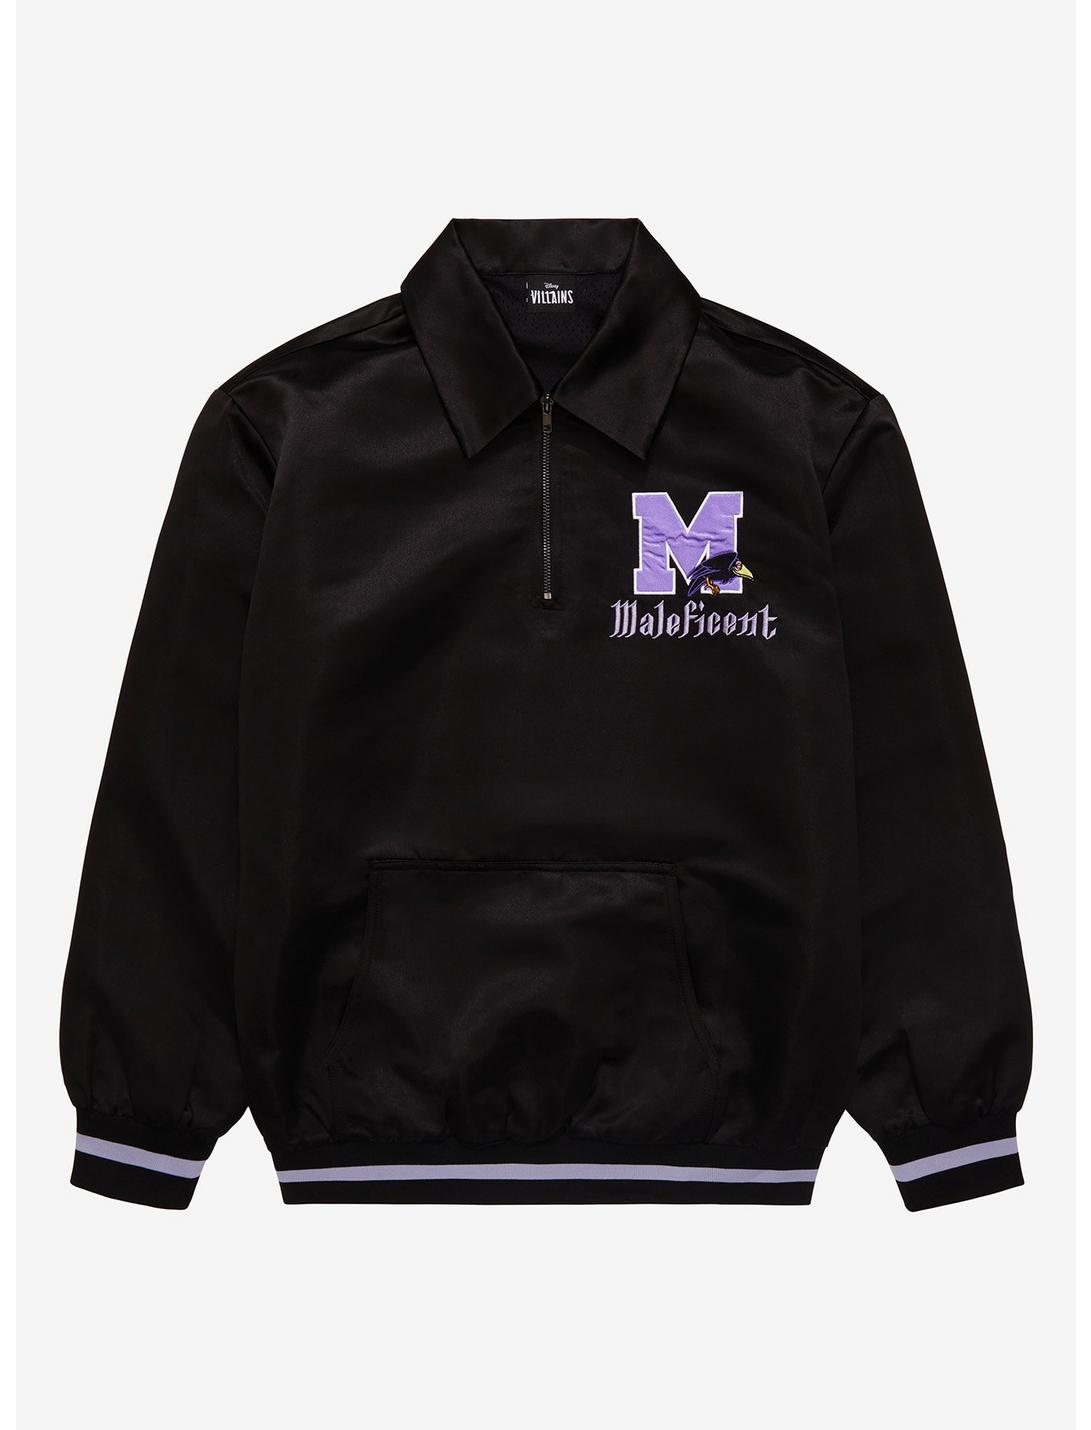 Disney Villains Maleficent Collegiate Quarter-Zip Sweater, BLACK, hi-res